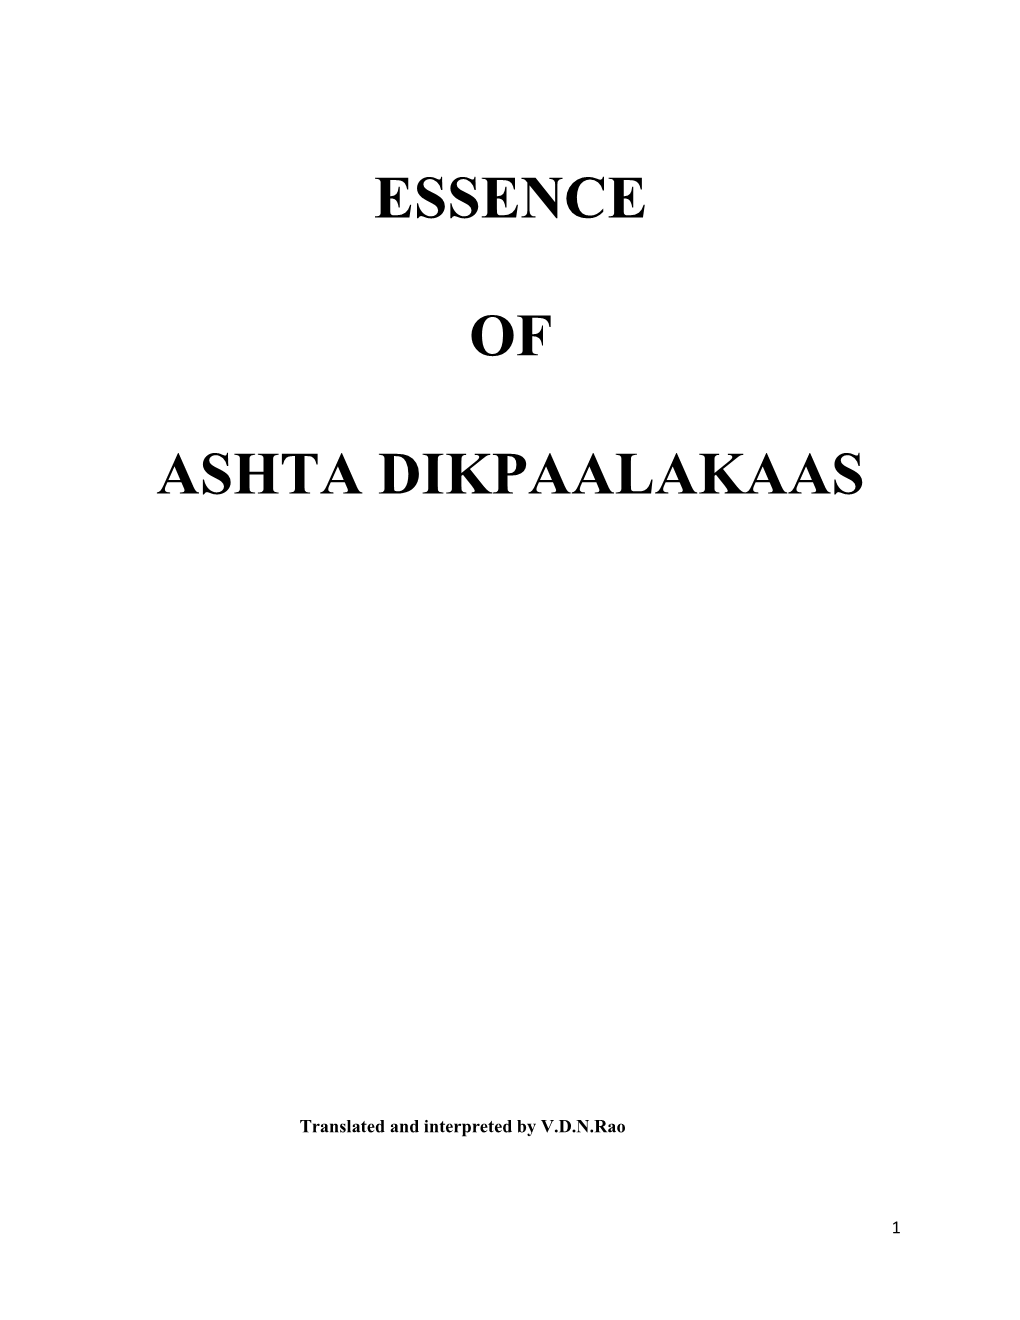 Essence of Ashta Dikpaalakaas